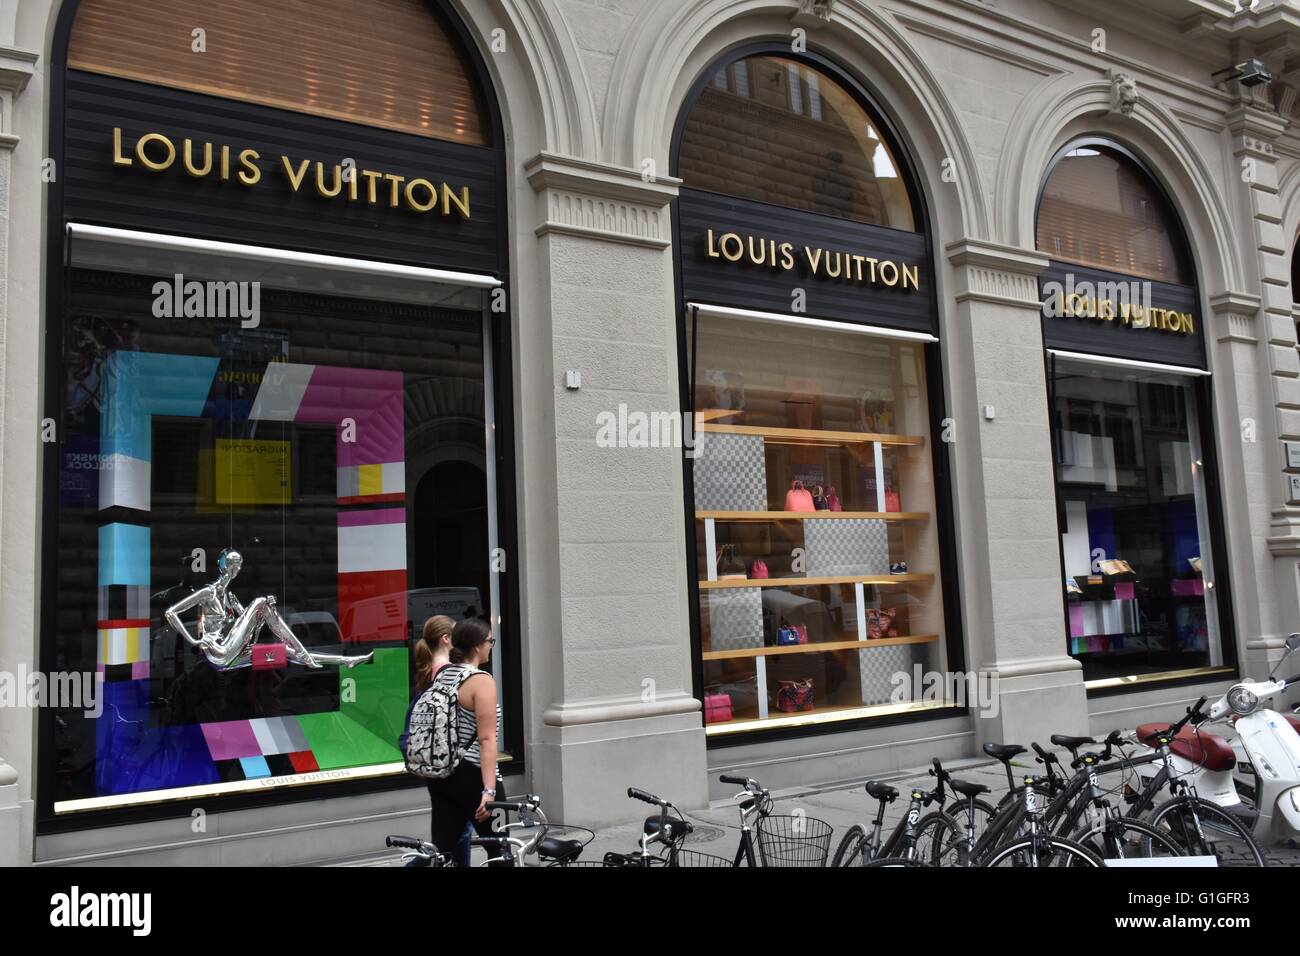 Louis Vuitton on X: Haruma Miura at the #LouisVuitton Men's